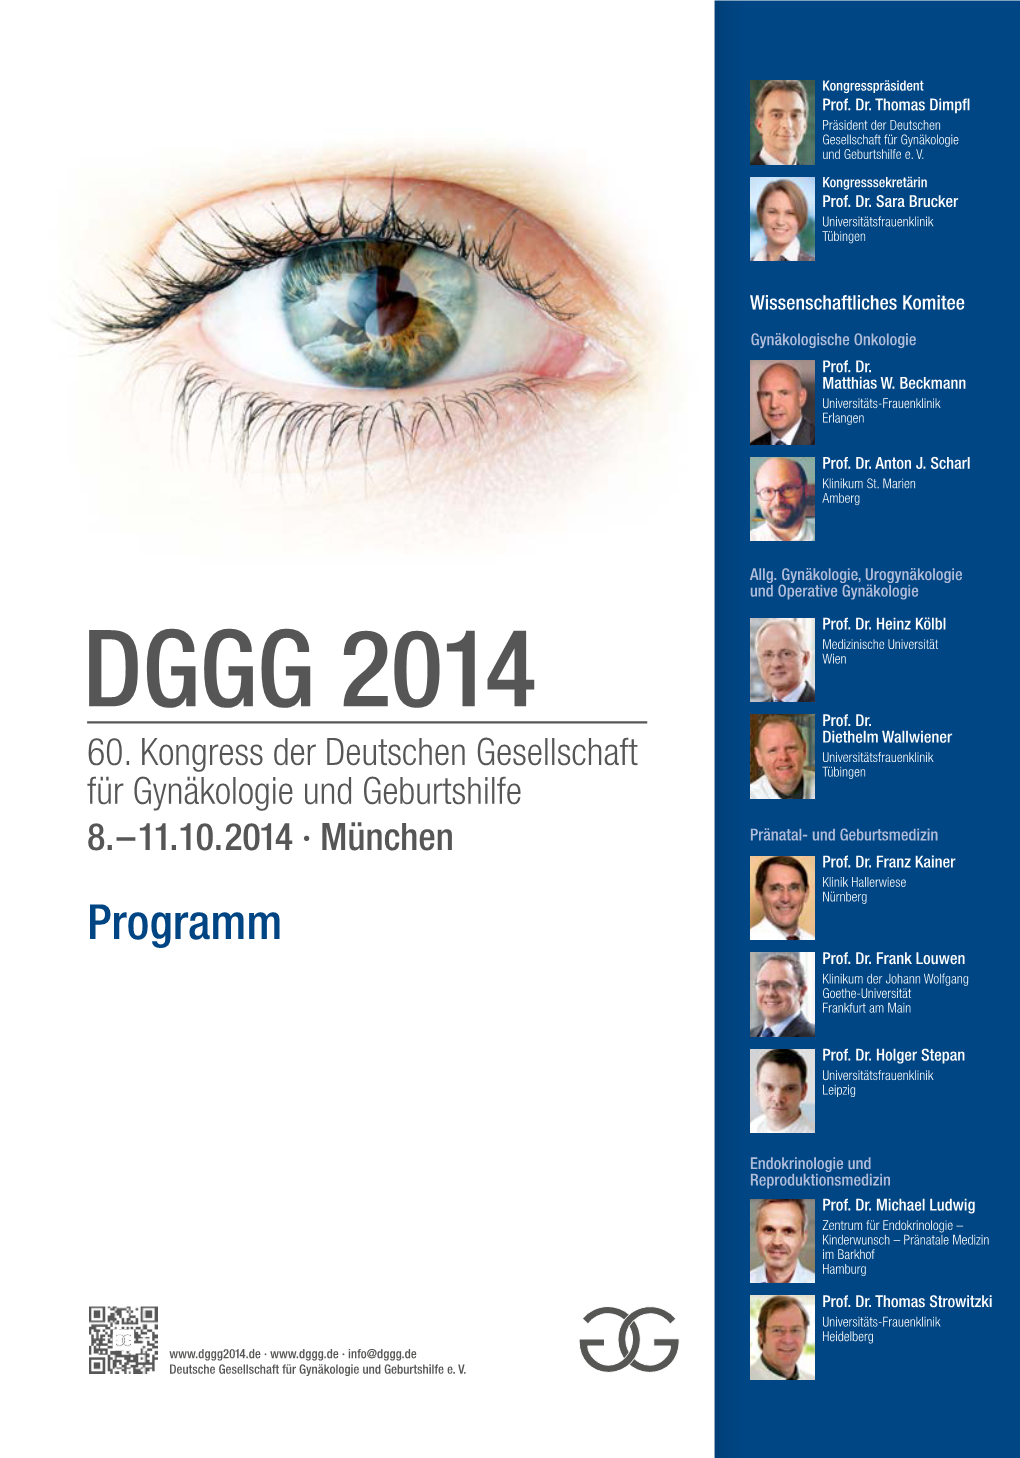 DGGG 2014 Wien Prof